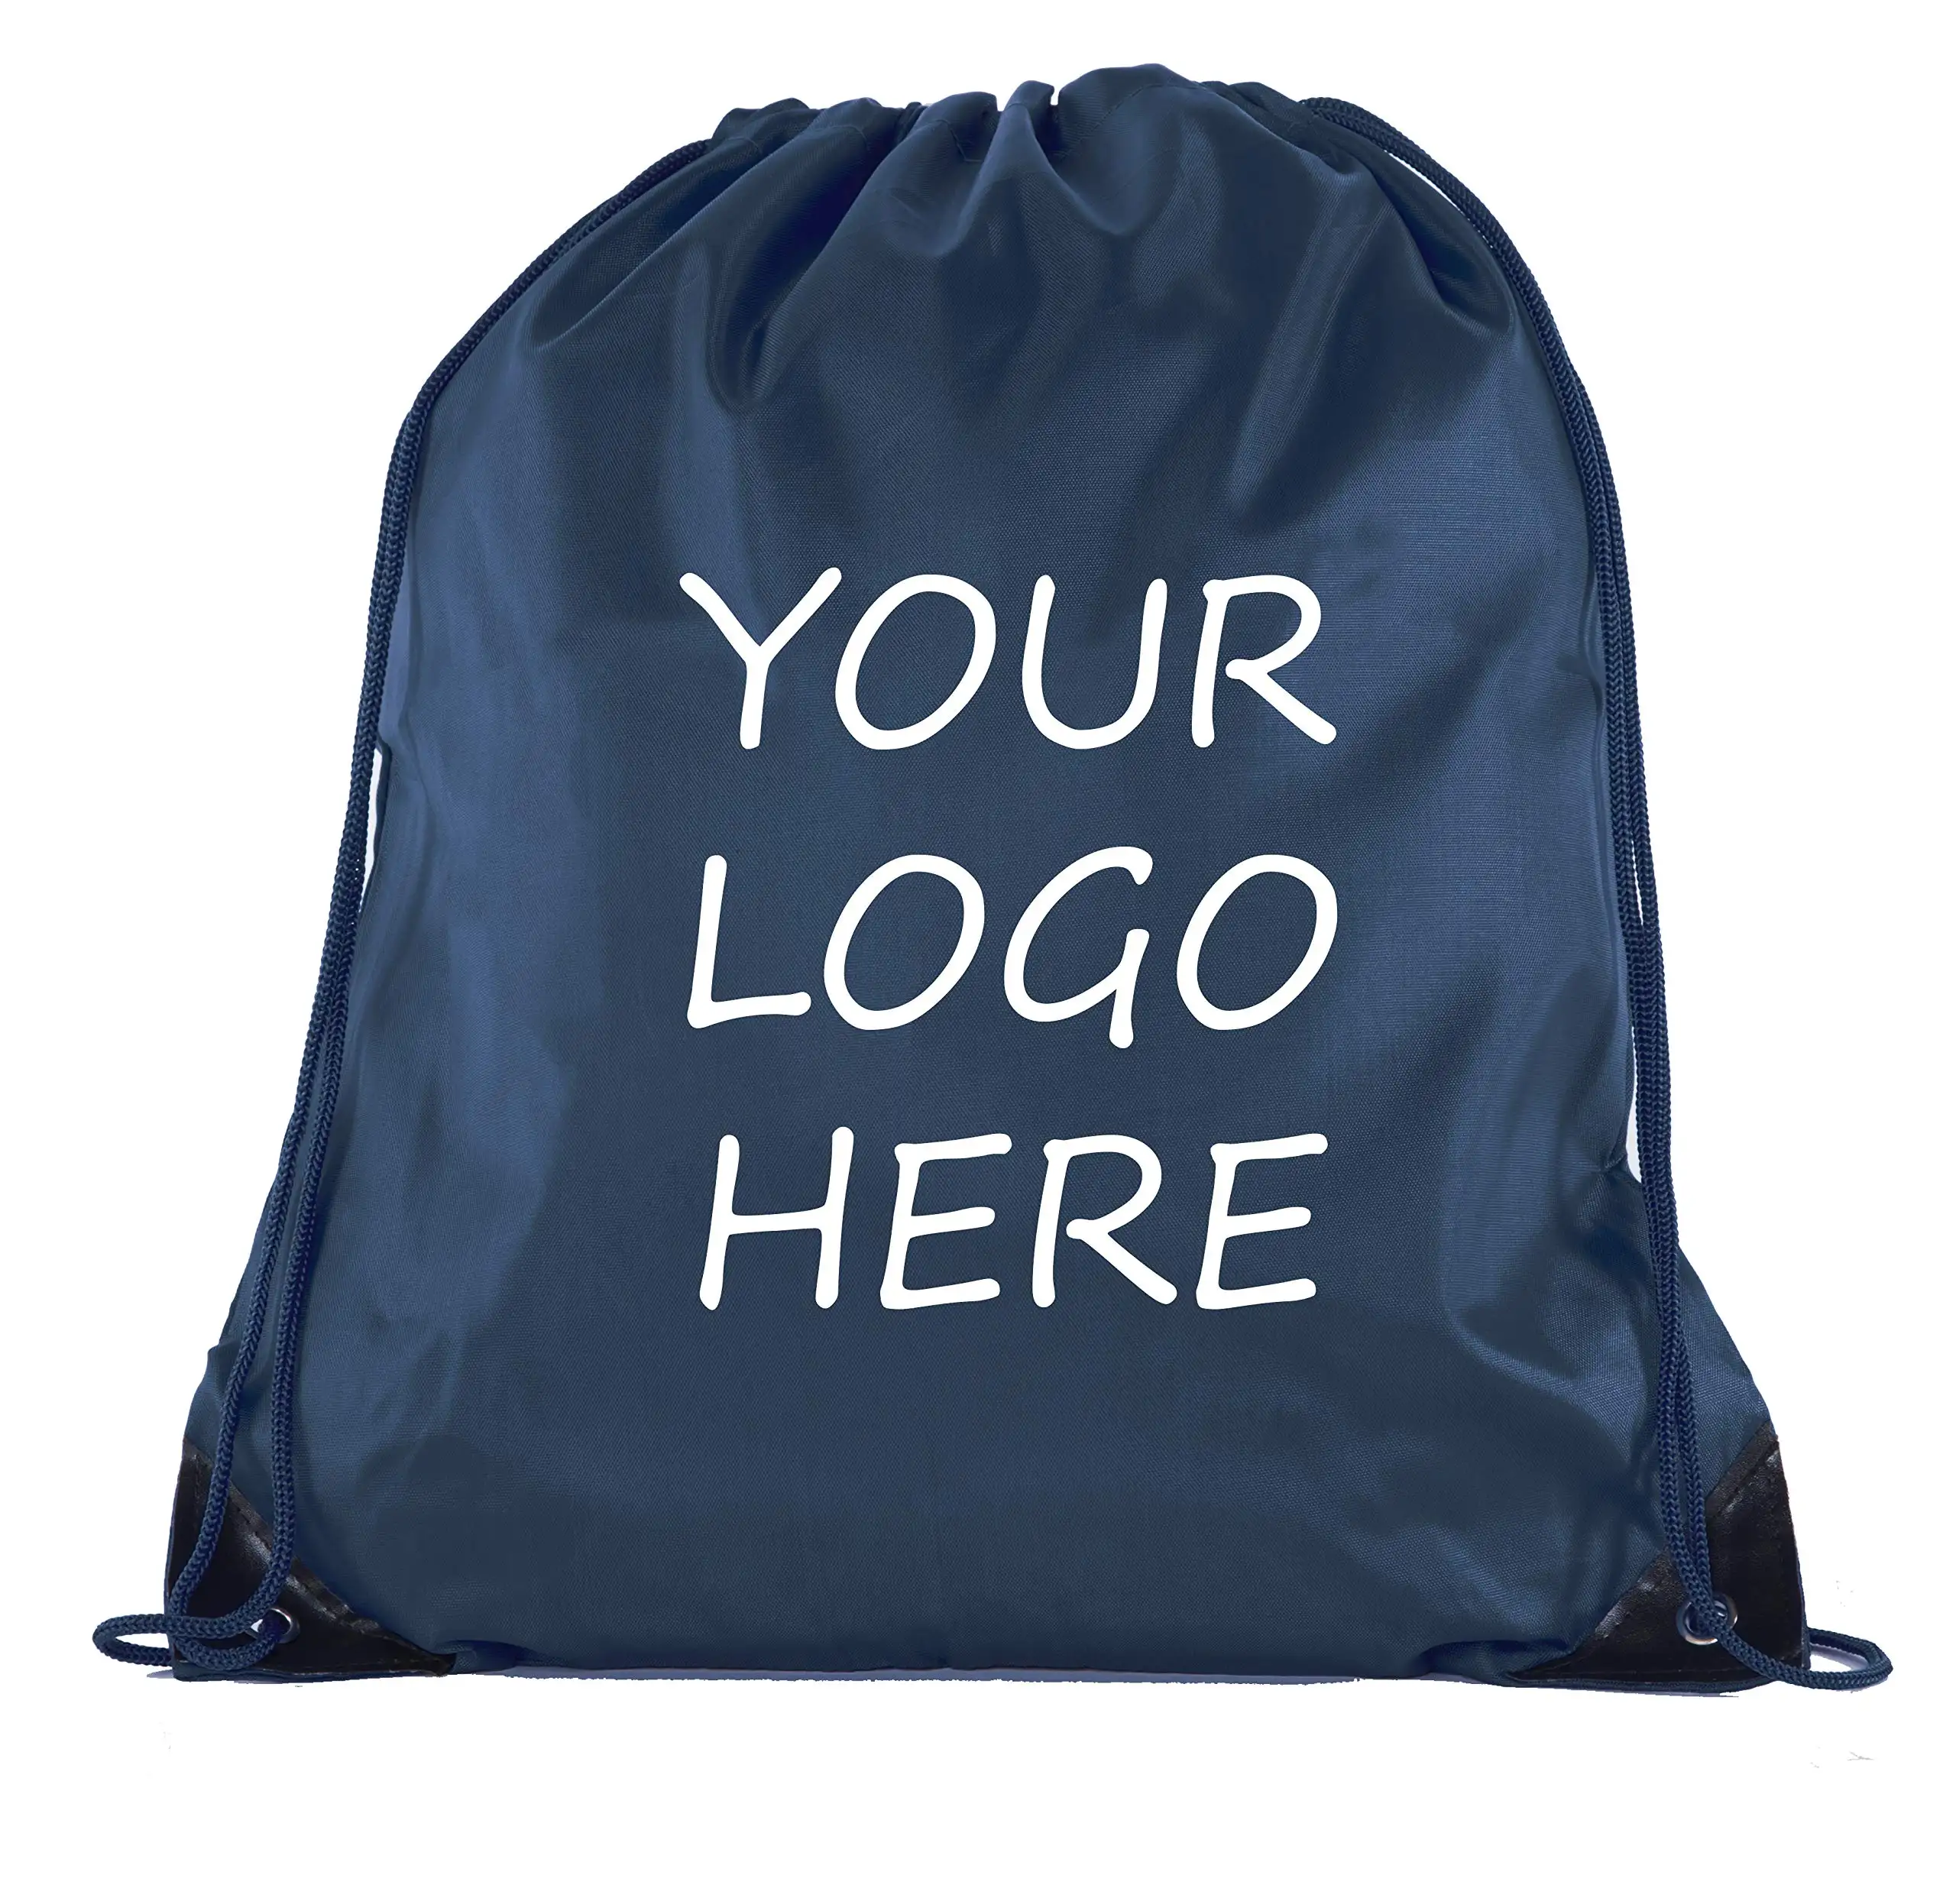 Özel Polyester moda toplu Cinch çuval sırt çantası çekme ipli çantalar Trendy 15 renkler mevcut İpli sırt çantası ile Logo